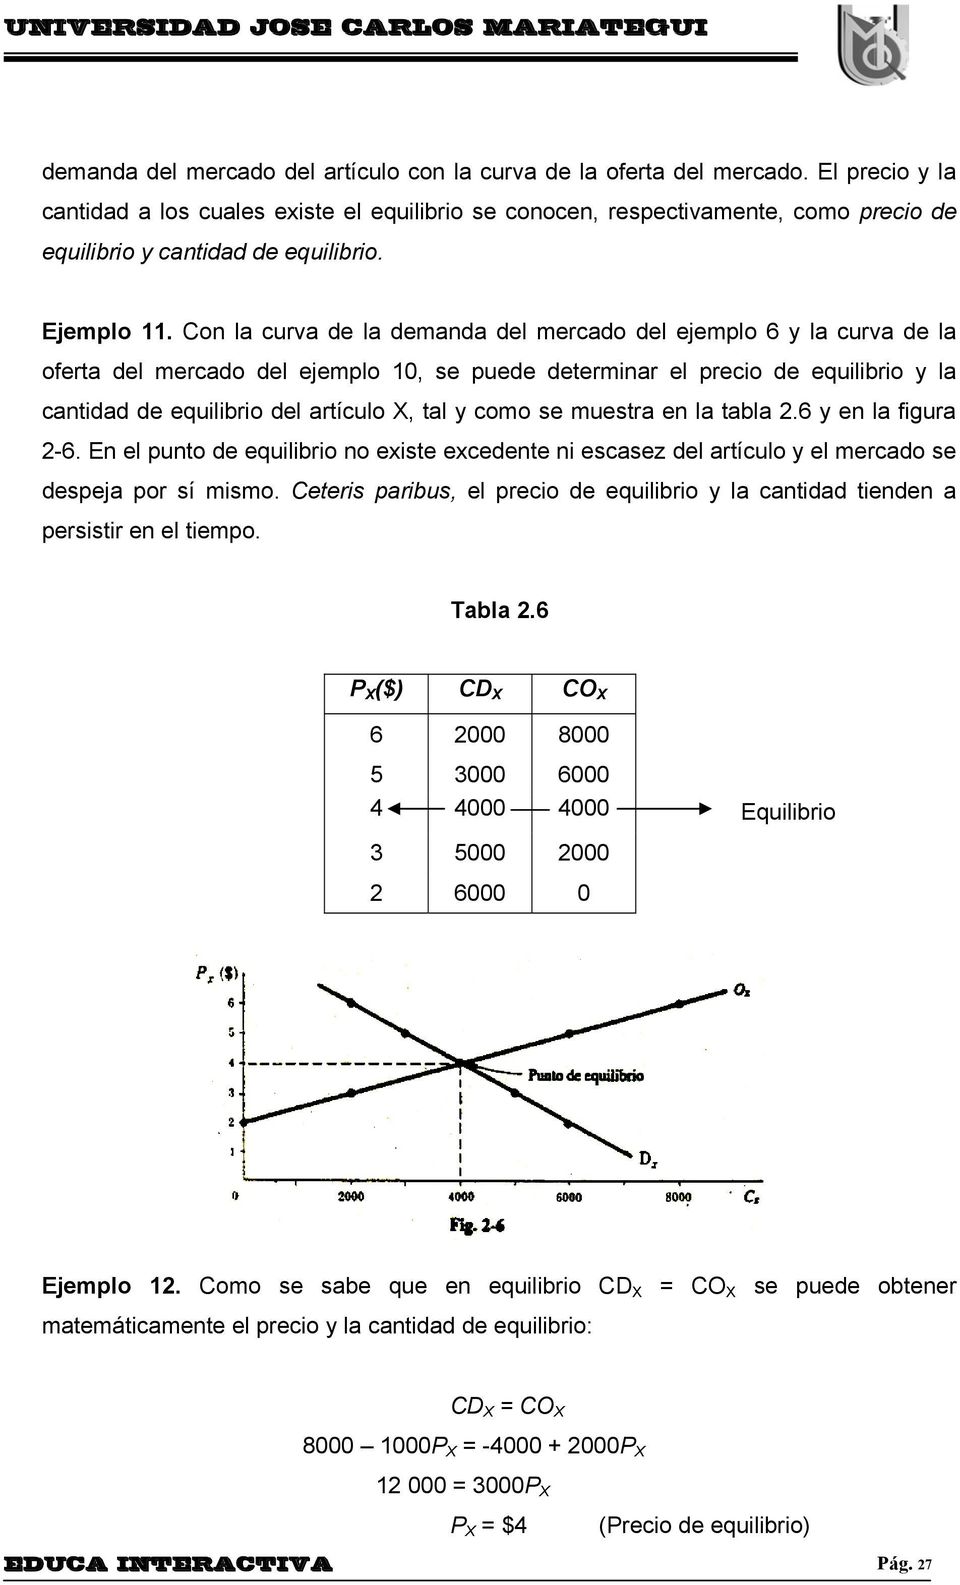 Con la curva de la demanda del mercado del ejemplo 6 y la curva de la oferta del mercado del ejemplo 10, se puede determinar el precio de equilibrio y la cantidad de equilibrio del artículo X, tal y